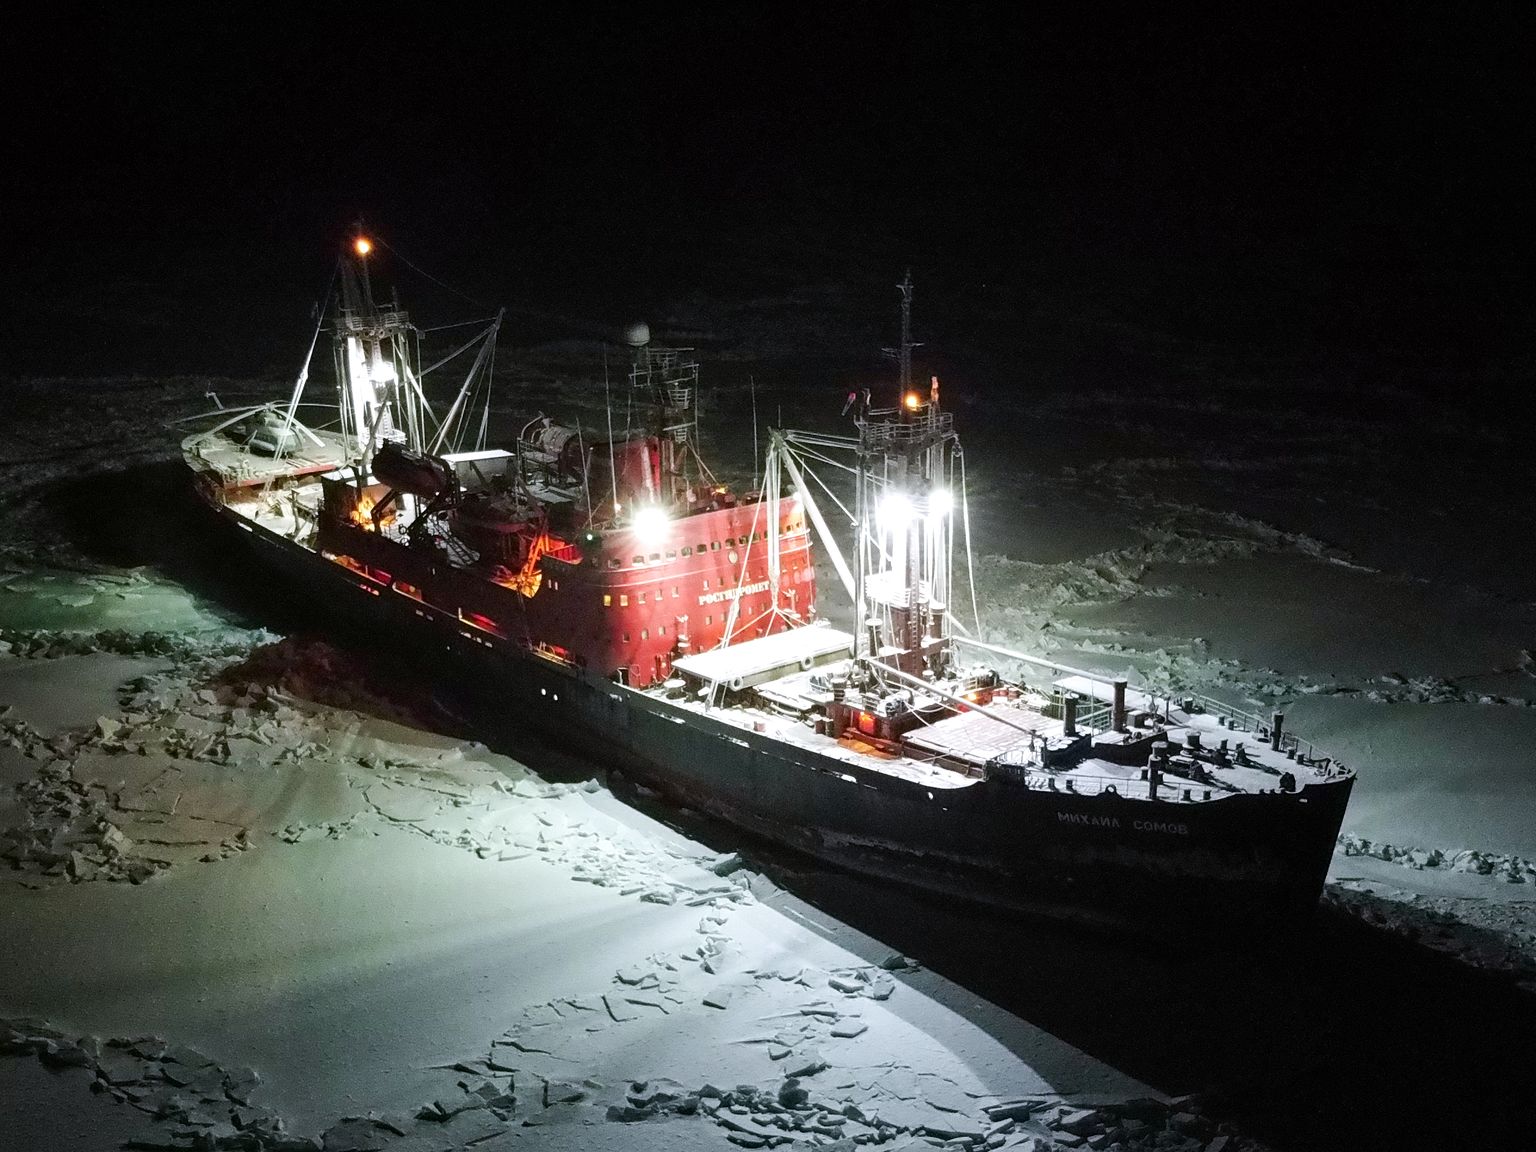 Venemaa uurimislaev Mihhail Somov pildistatuna 20. novembril, laev oli jääs kinni Vilkitski väinas Venemaa mandriosa ja Severnaja Zemlja saarestiku vahel